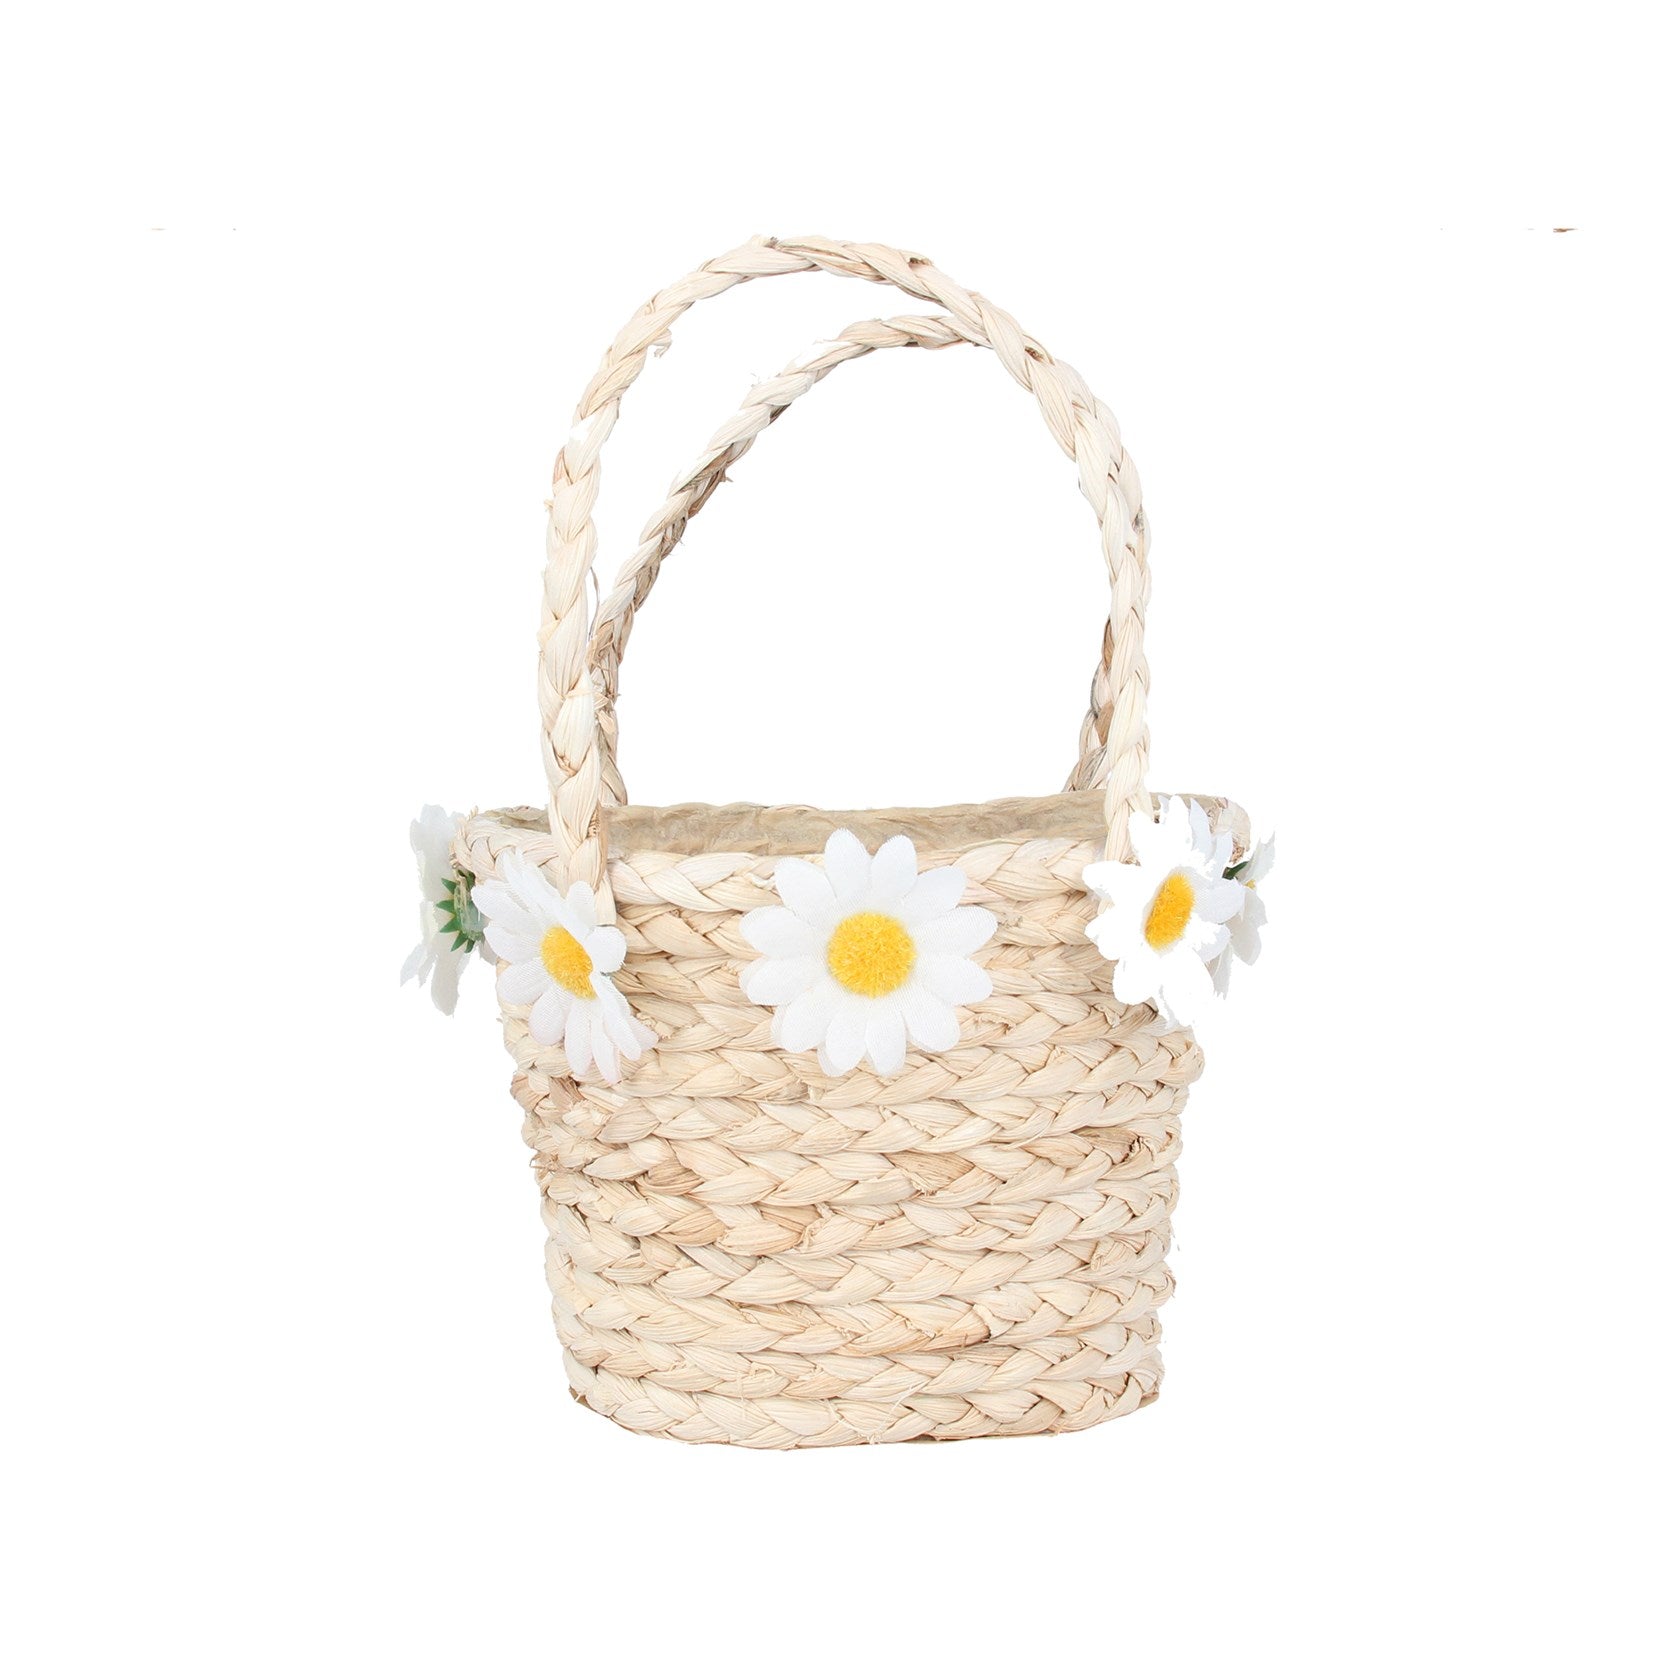 Straw basket with daisy trim